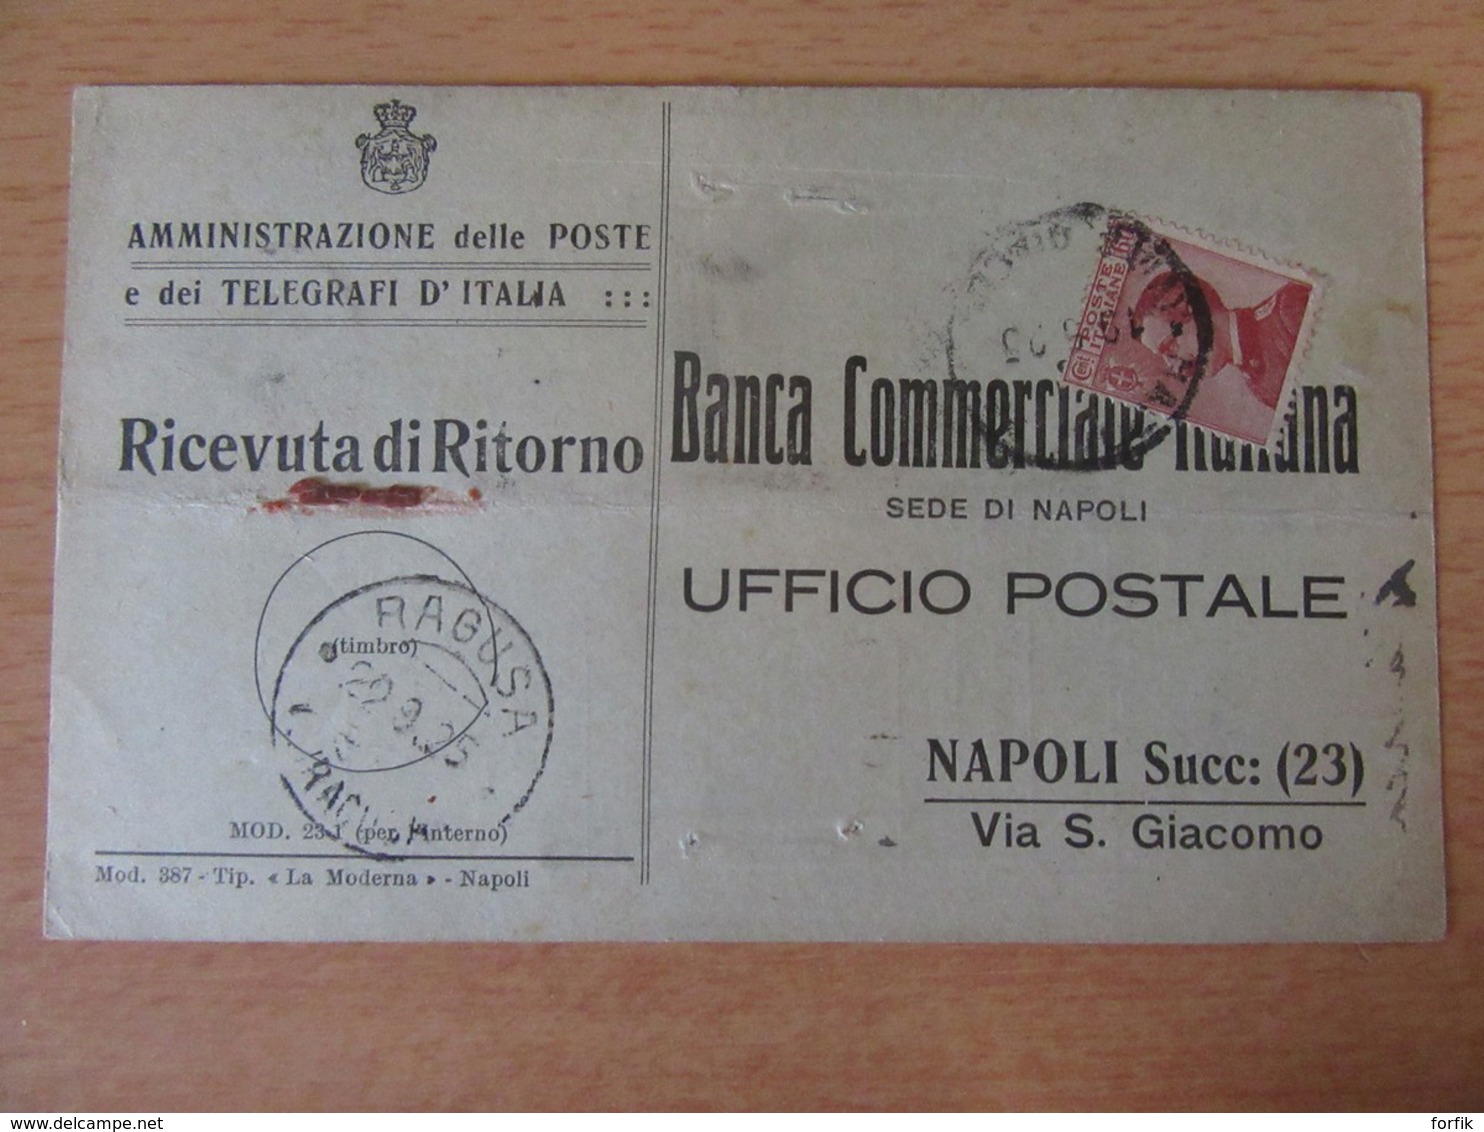 Italie - 2 Telegraphes De La "Banca Commerciale Italiana" Avec Timbres YT N°108 - Cachets Ragusa / Mondaino 1925 - Marcophilie